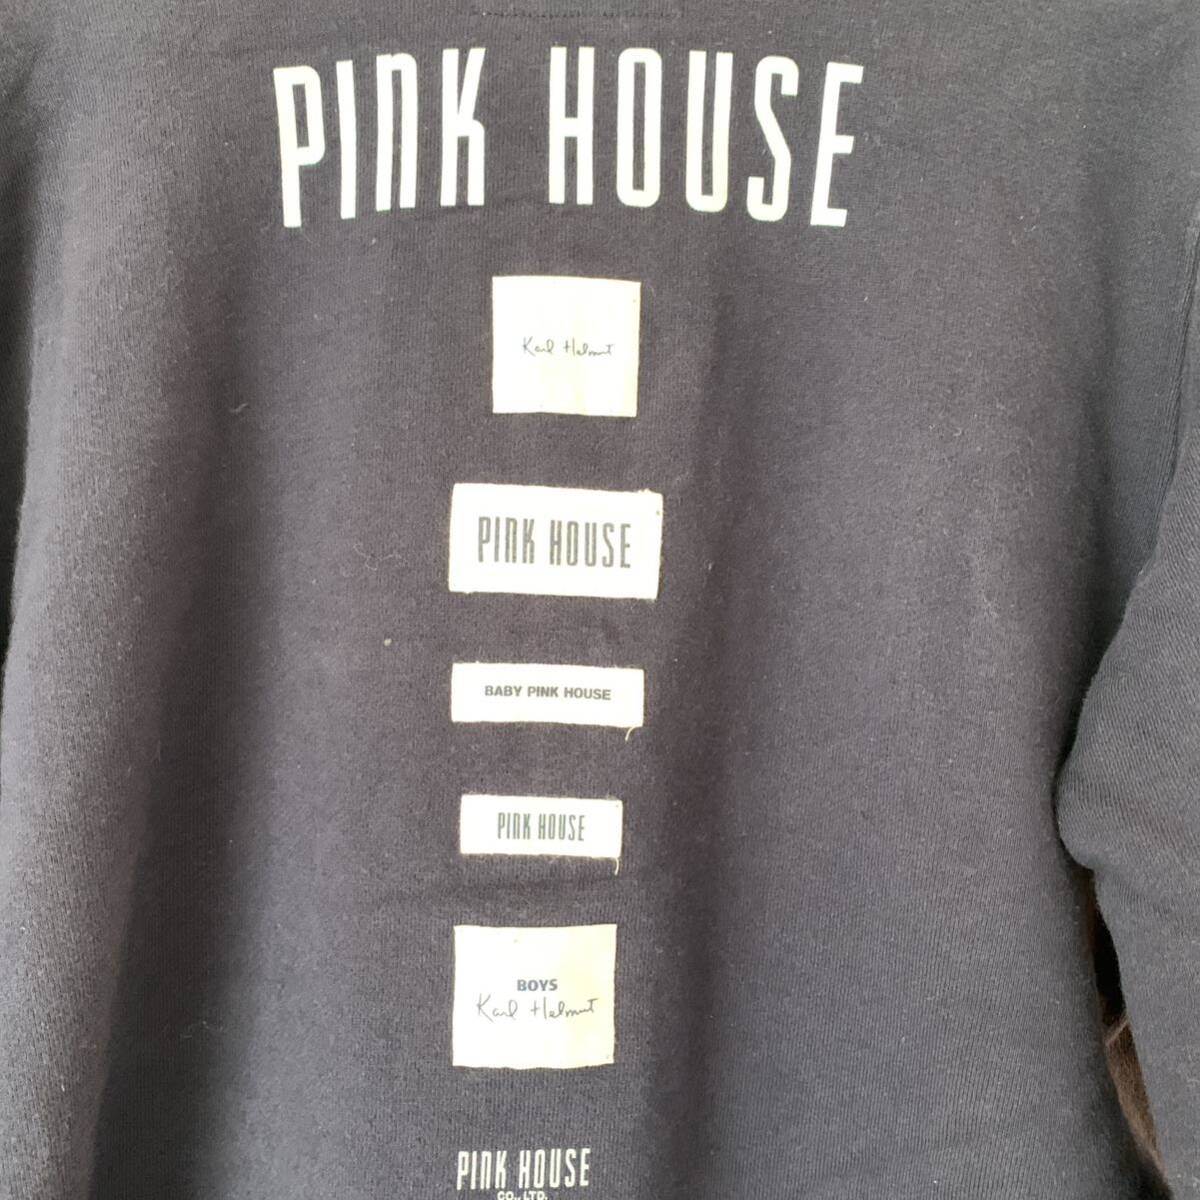  Pink House длинный рукав Parker темно-синий цвет тренировочный Parker Zip Parker Zip выше полный Zip темно-синий 